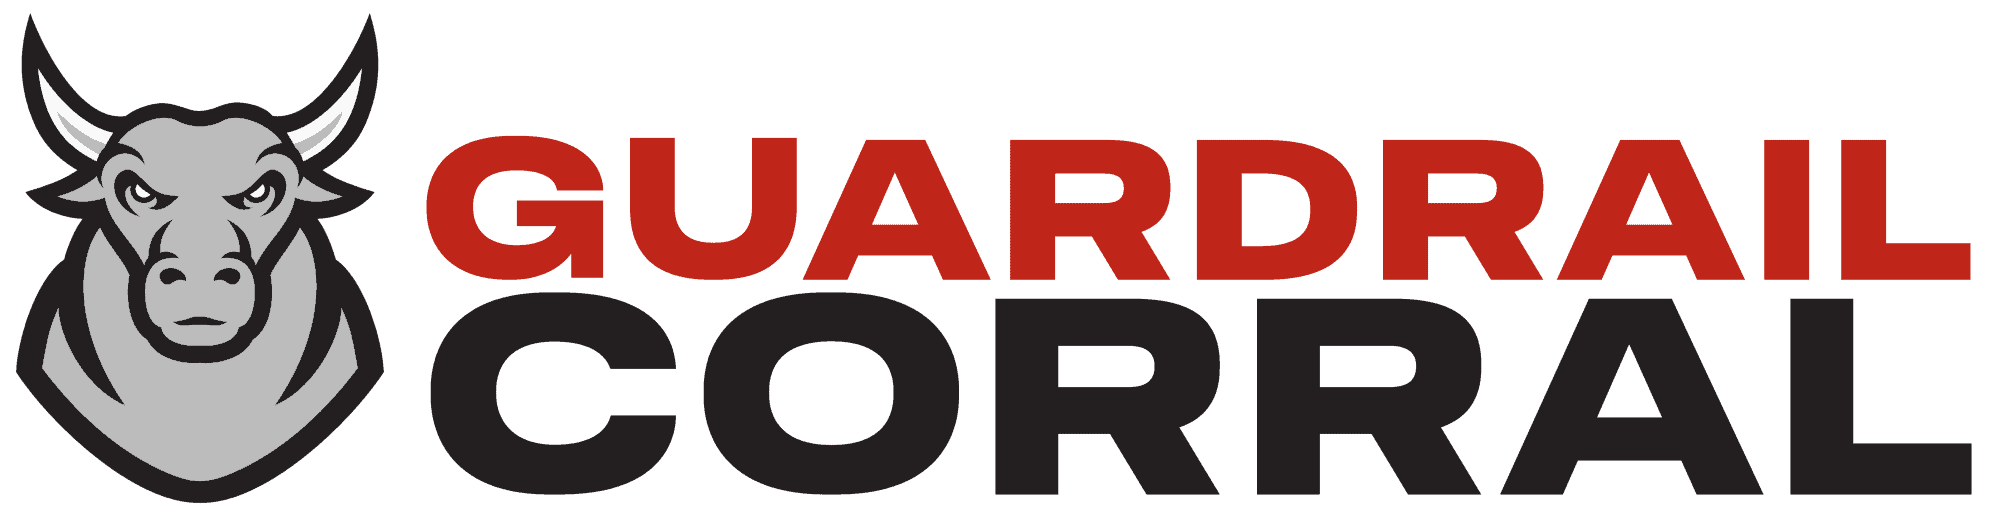 Guardrail Corral